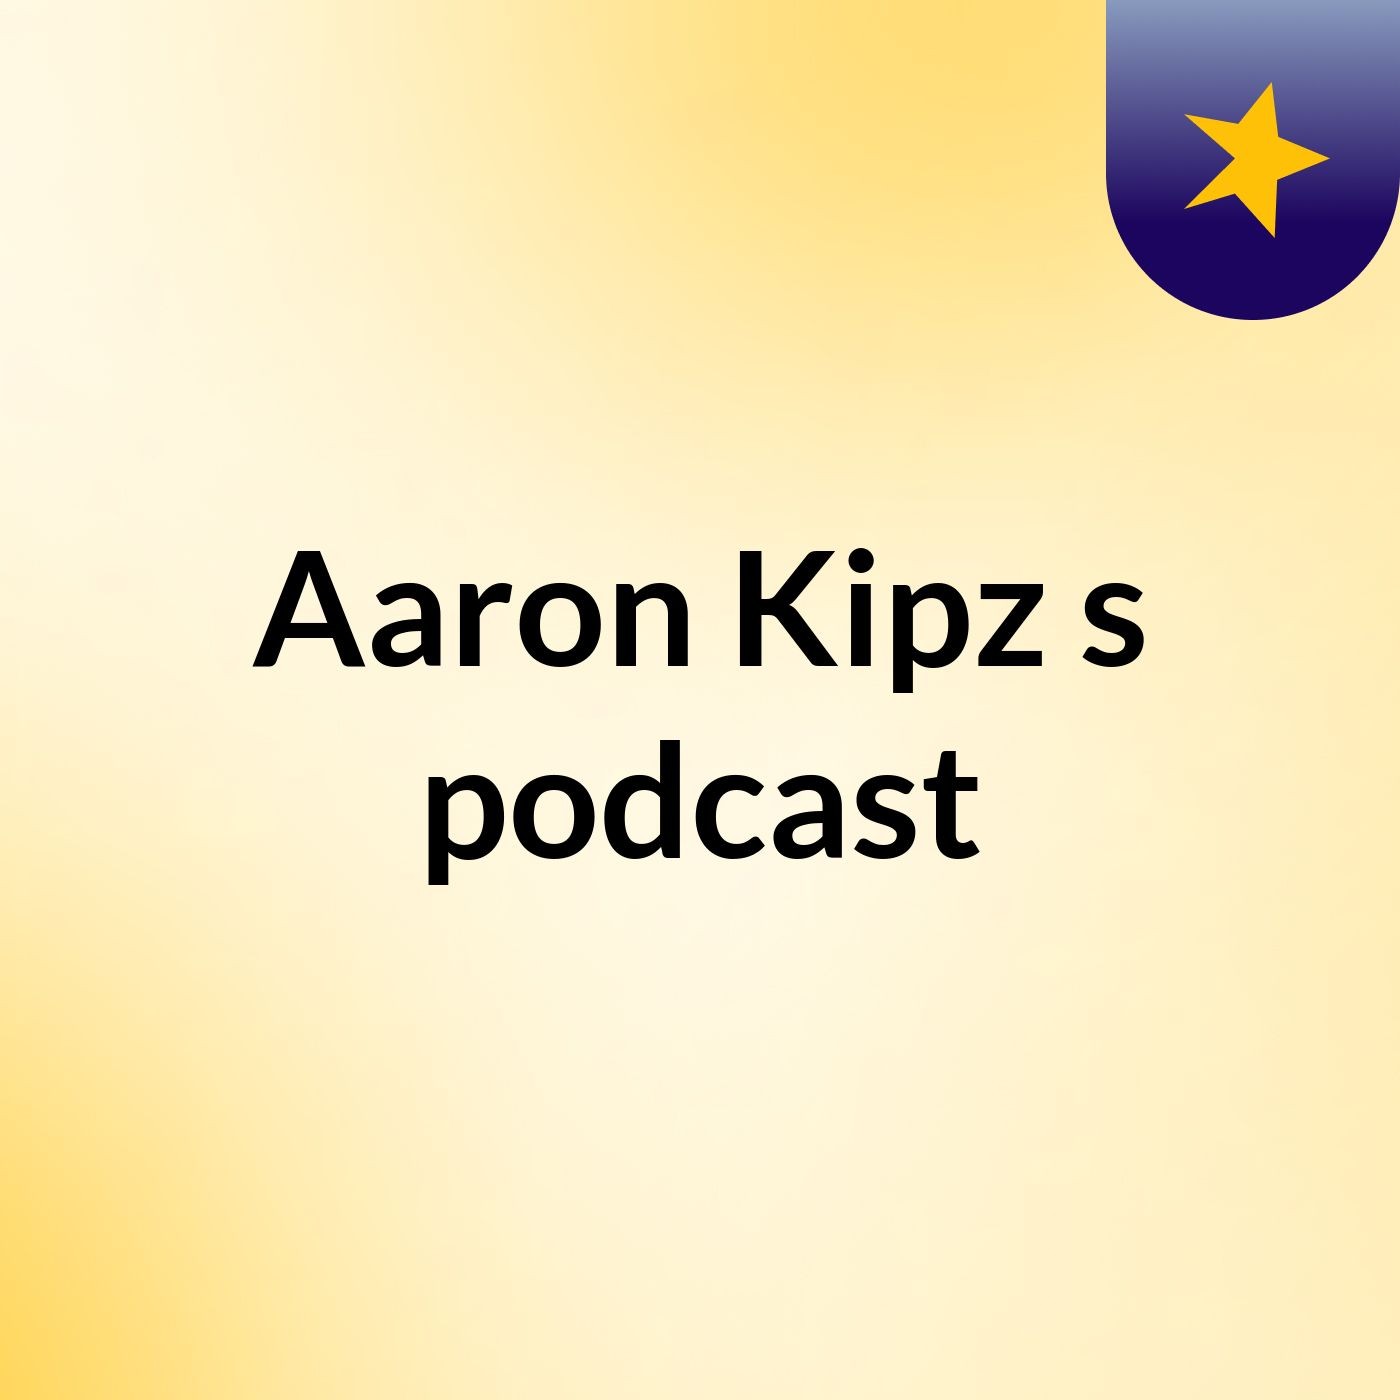 Episode 3 - Aaron Kipz's podcast